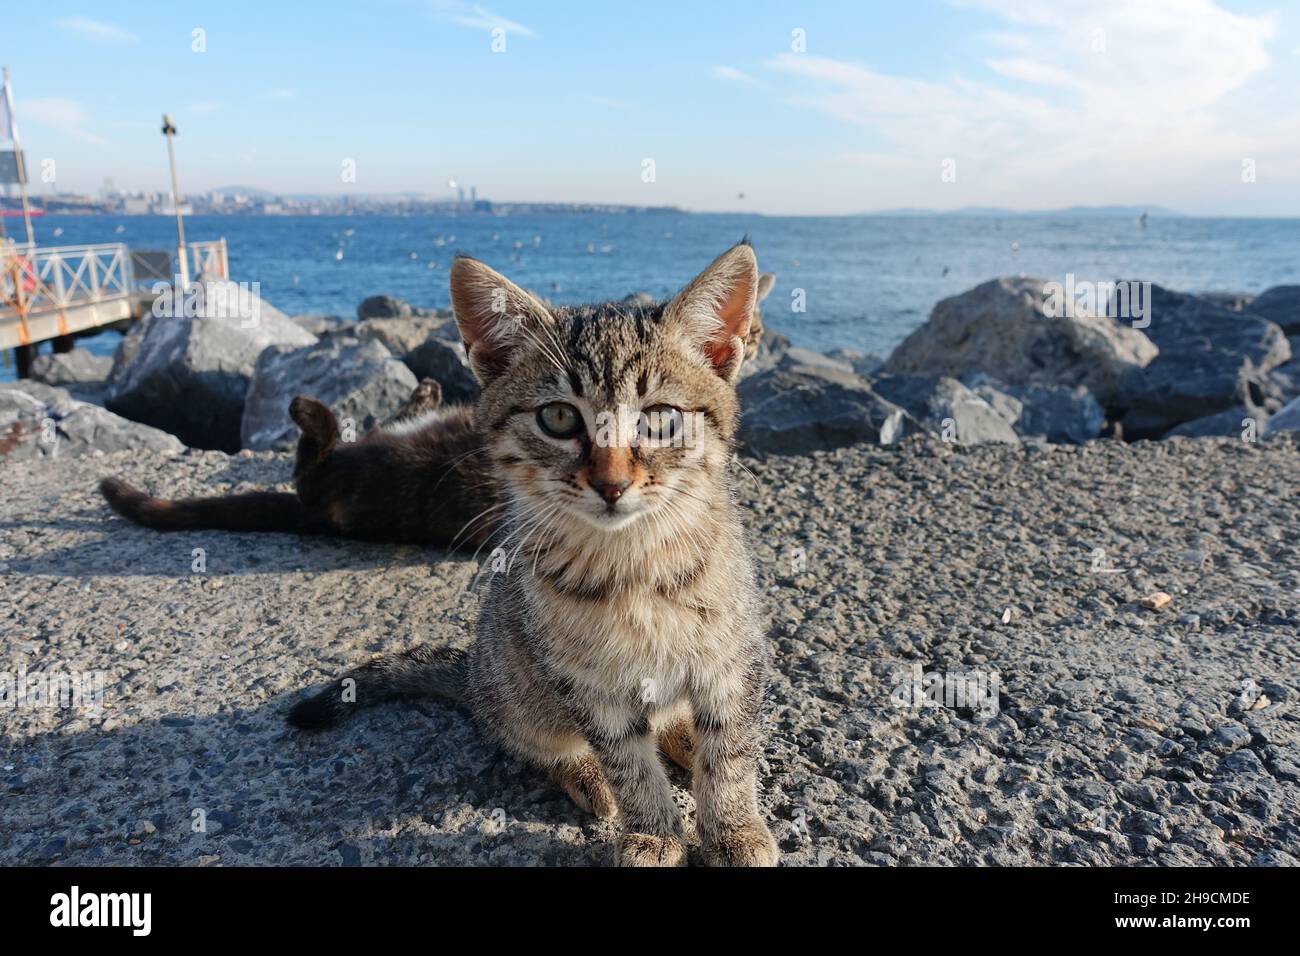 Petits chatons gris (petits chats) sur la baie d'Istanbul - de jolis petits chats regardant dans l'appareil photo avec fond d'océan Banque D'Images